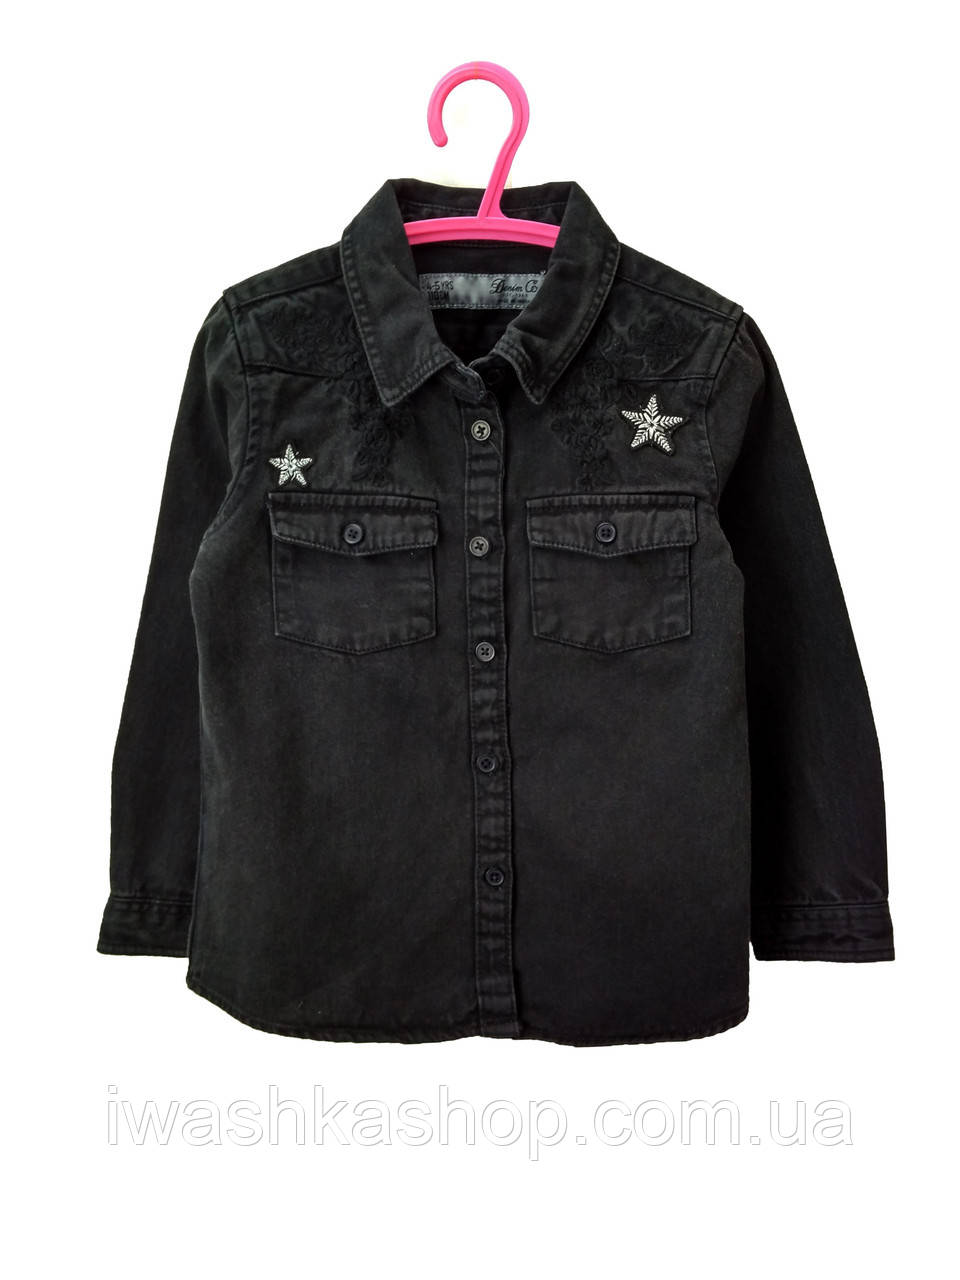 Черная джинсовая рубашка для девочки 9 - 10 лет, Primark р. 140